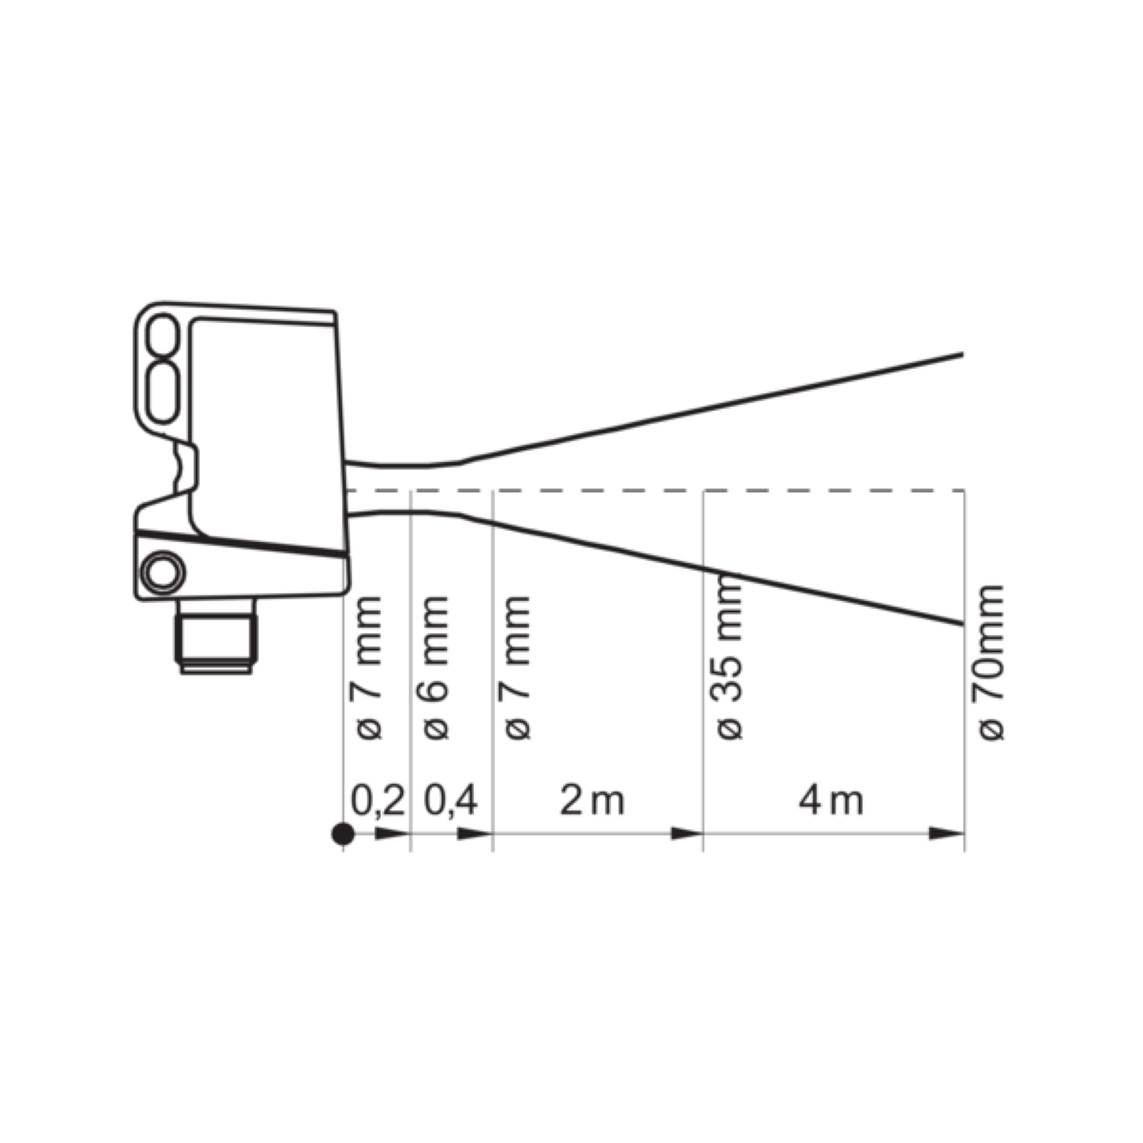 Fényvisszaverő fotoelektromos optikai érzékelő, téglalap alakú,  Baumer